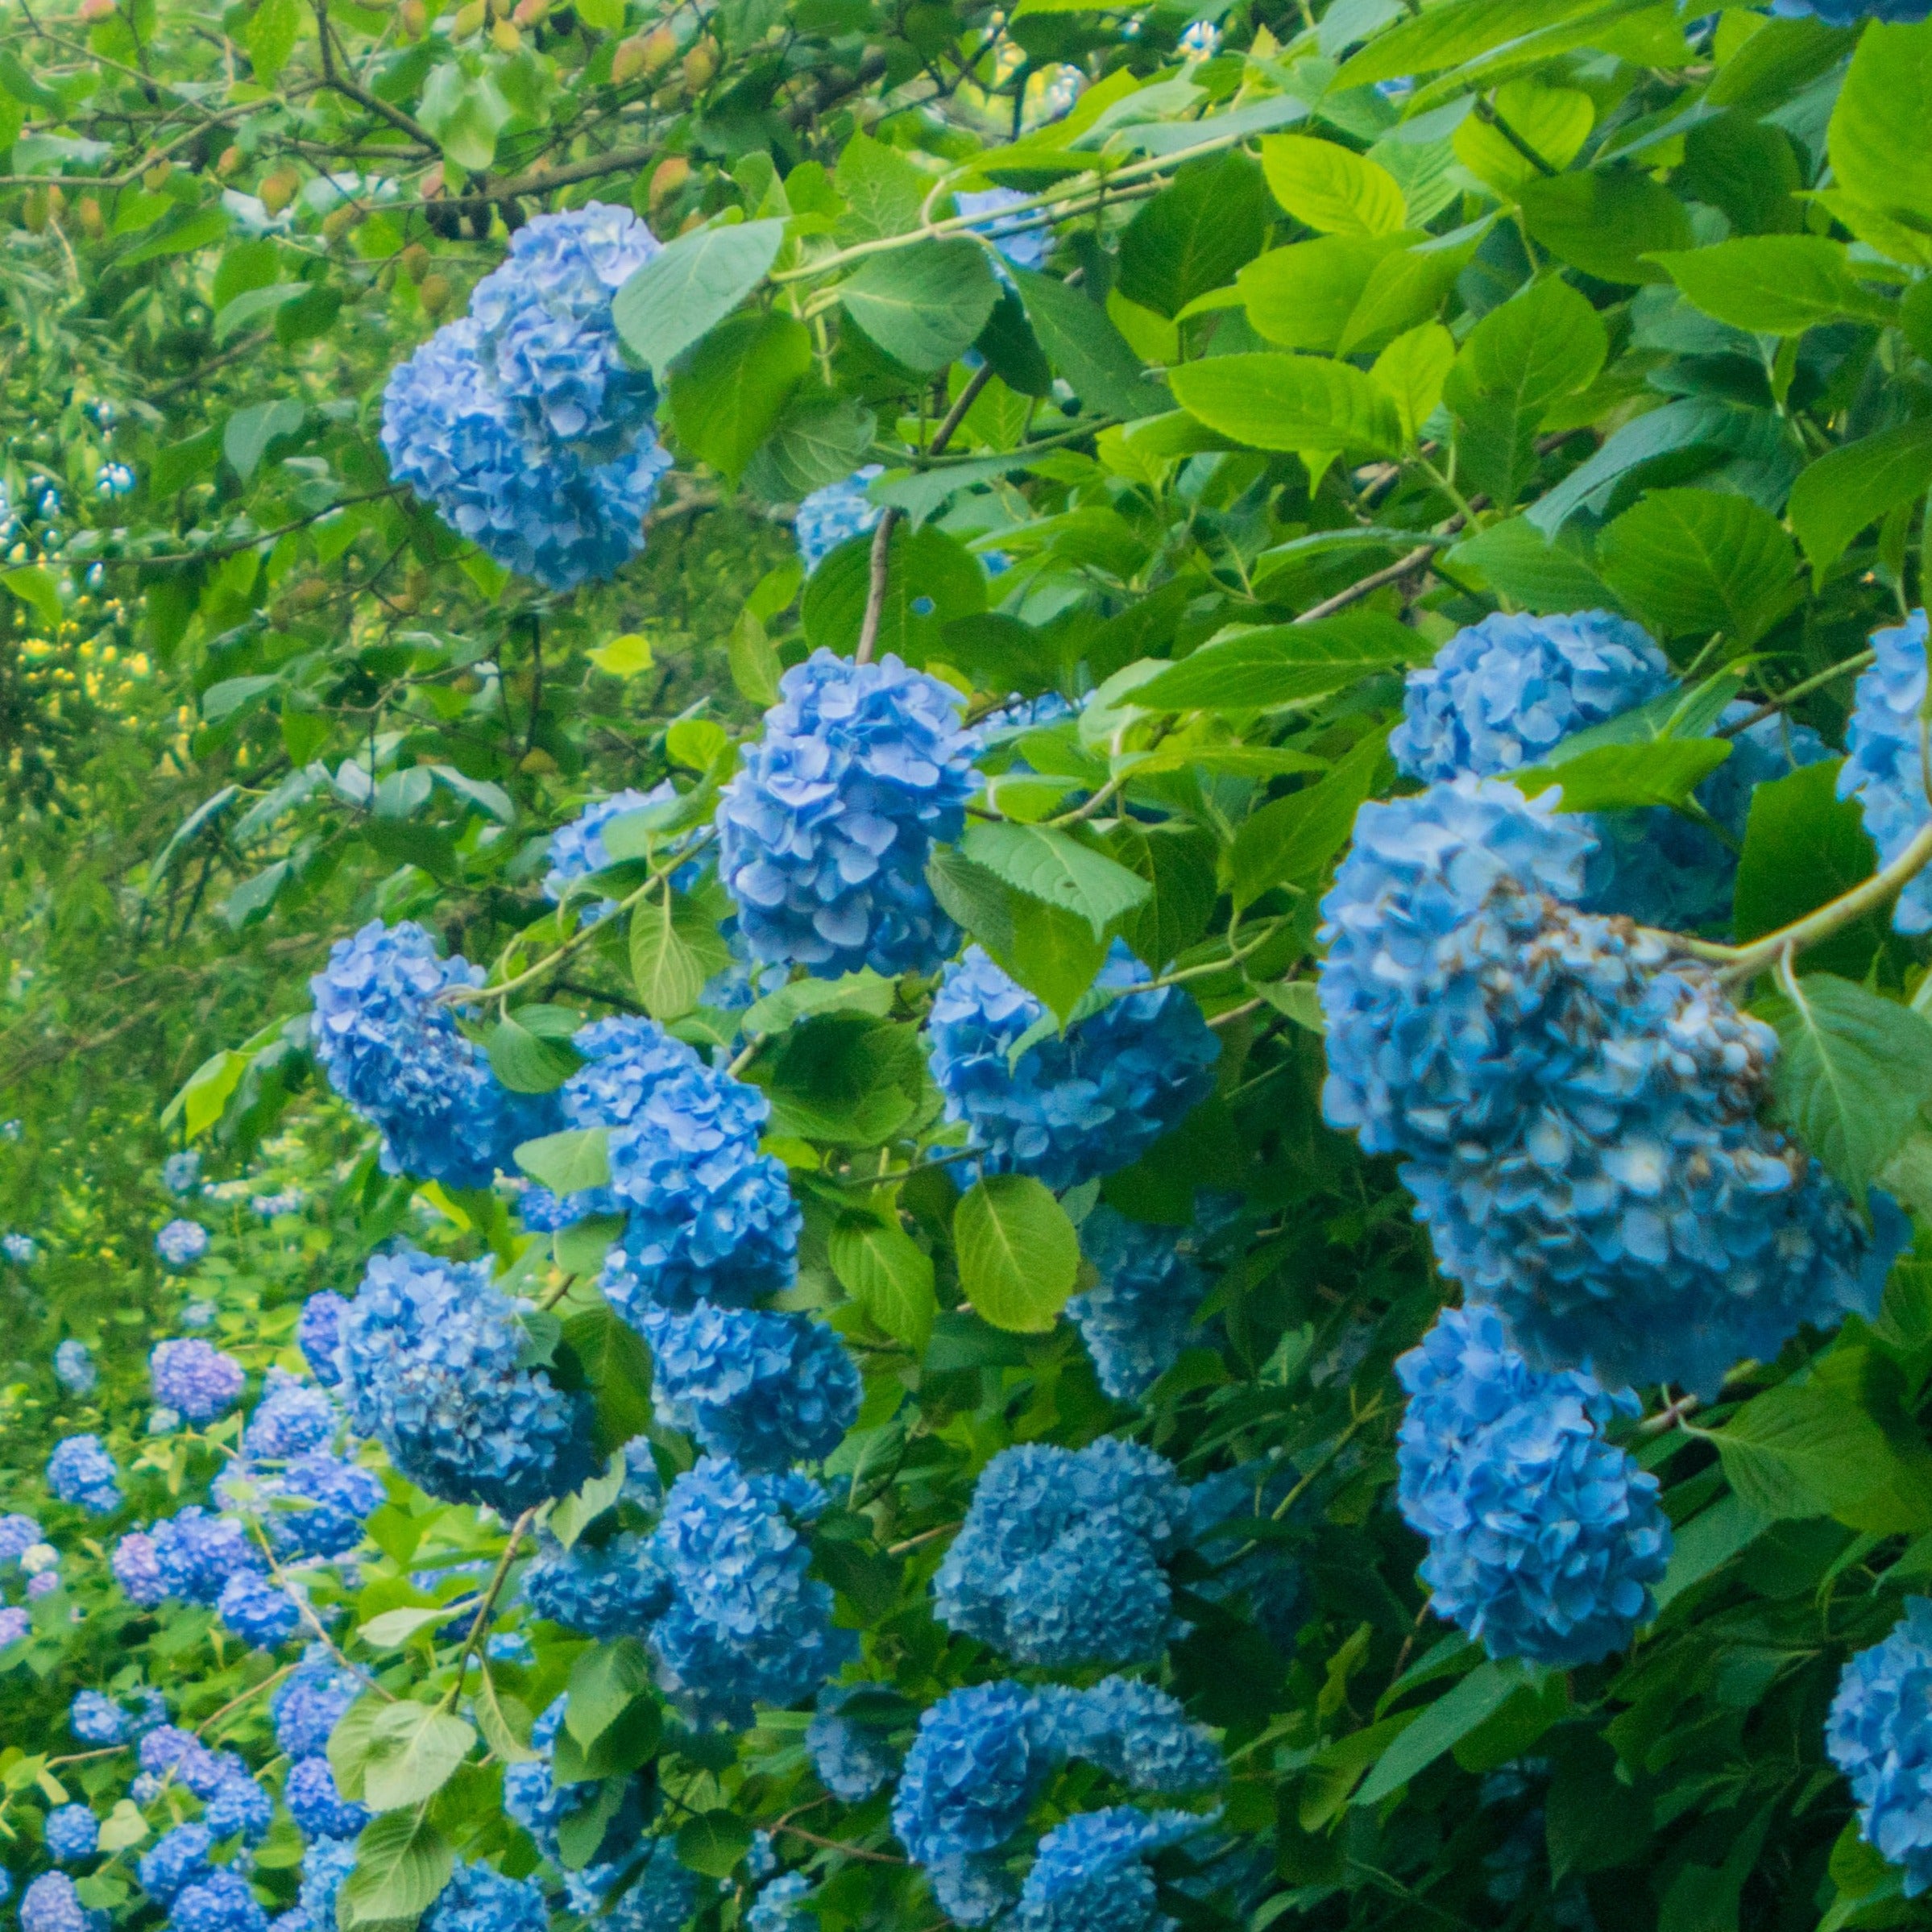 Blå hortensia (Hydrangea Macrophylla Blaumeise) kendetegnes ved de store, smukke blomsterskærme i blå og blållige nuancer og med pæne grønne blade her som samlet busk